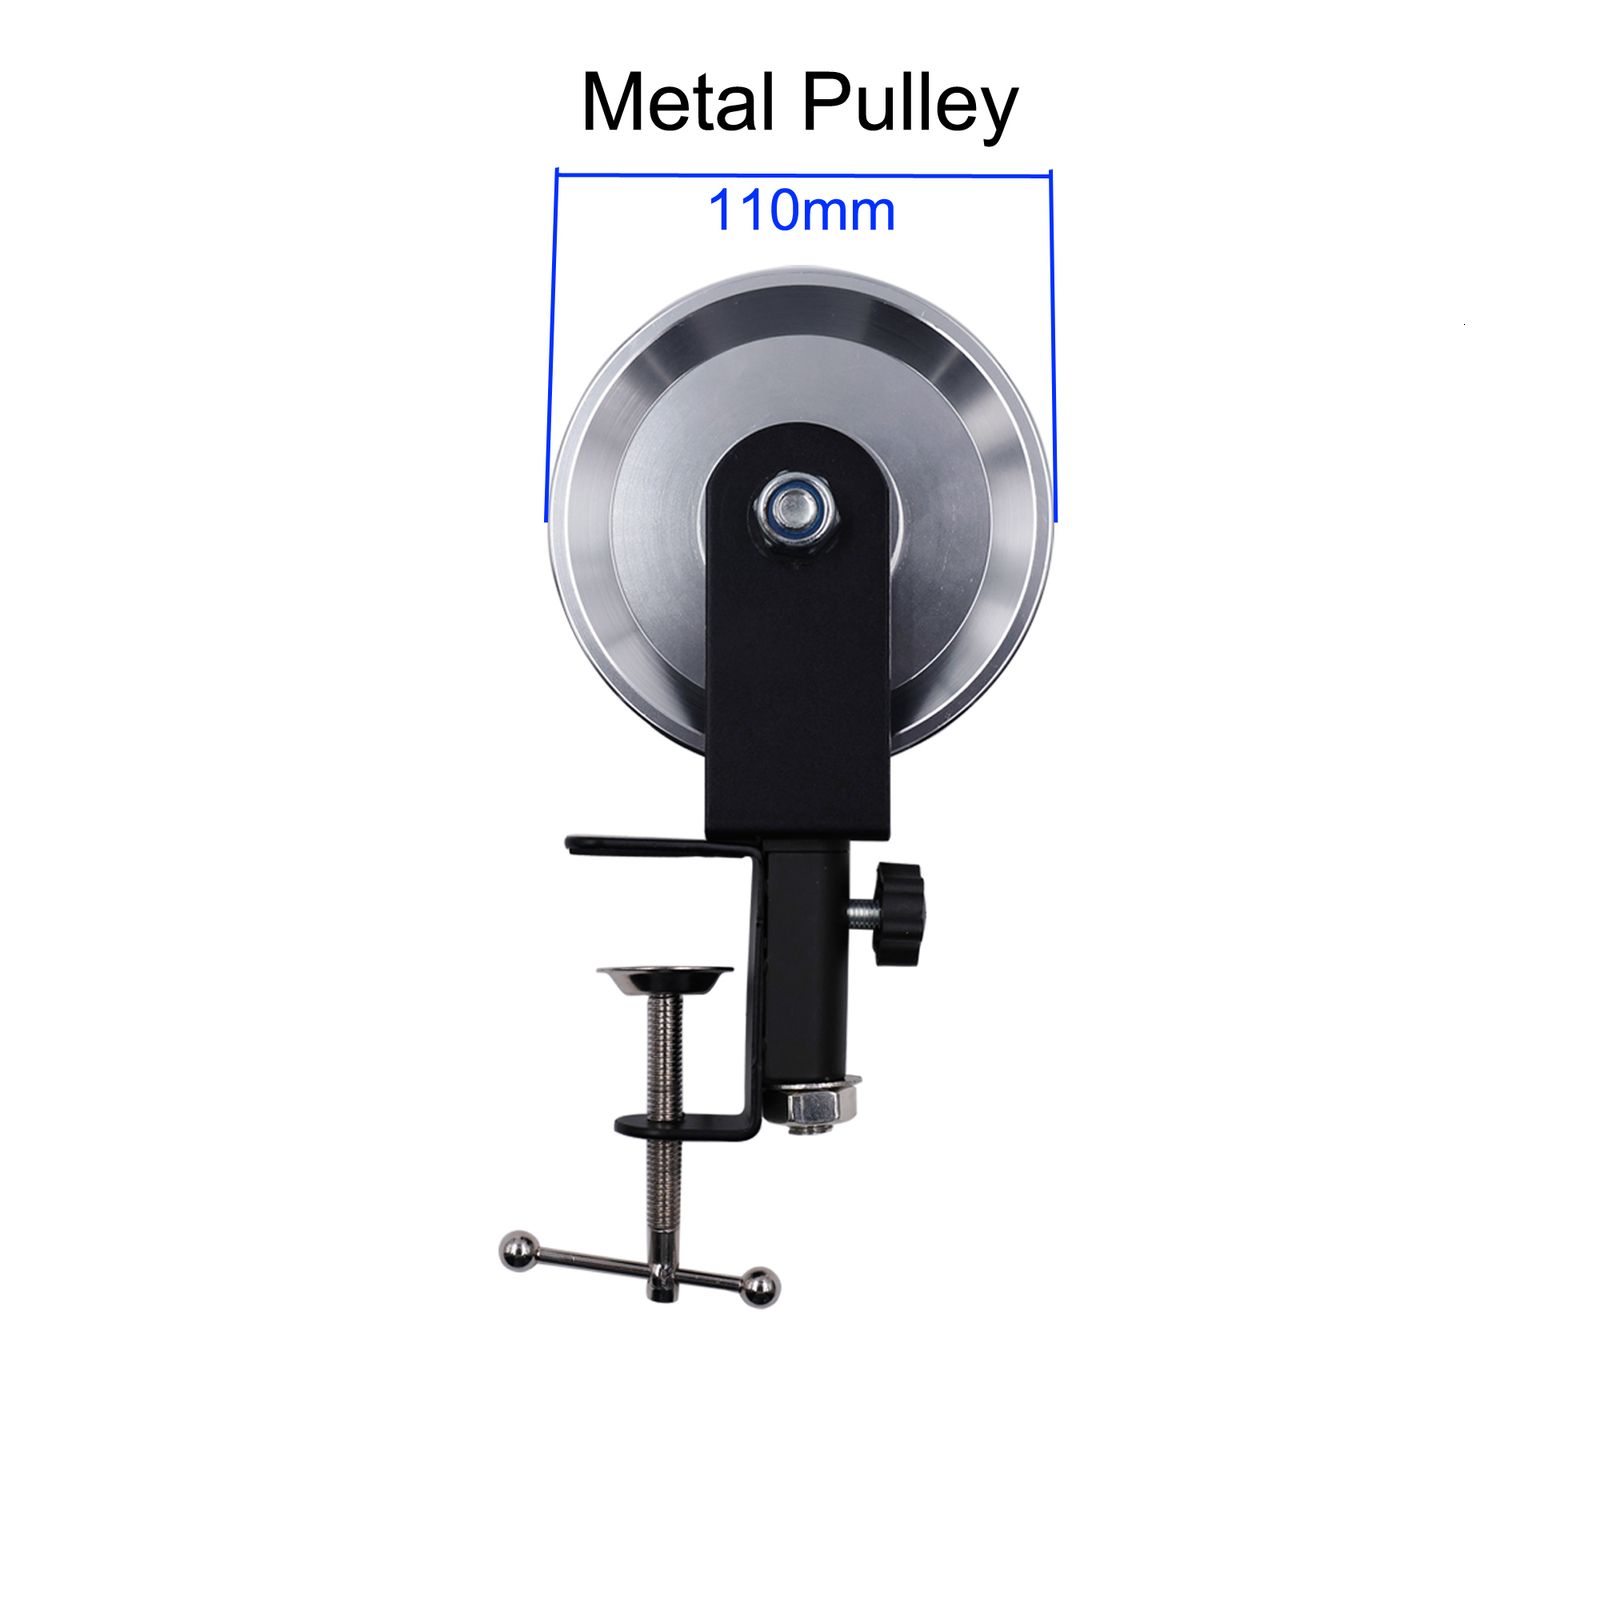 Metal Pulley